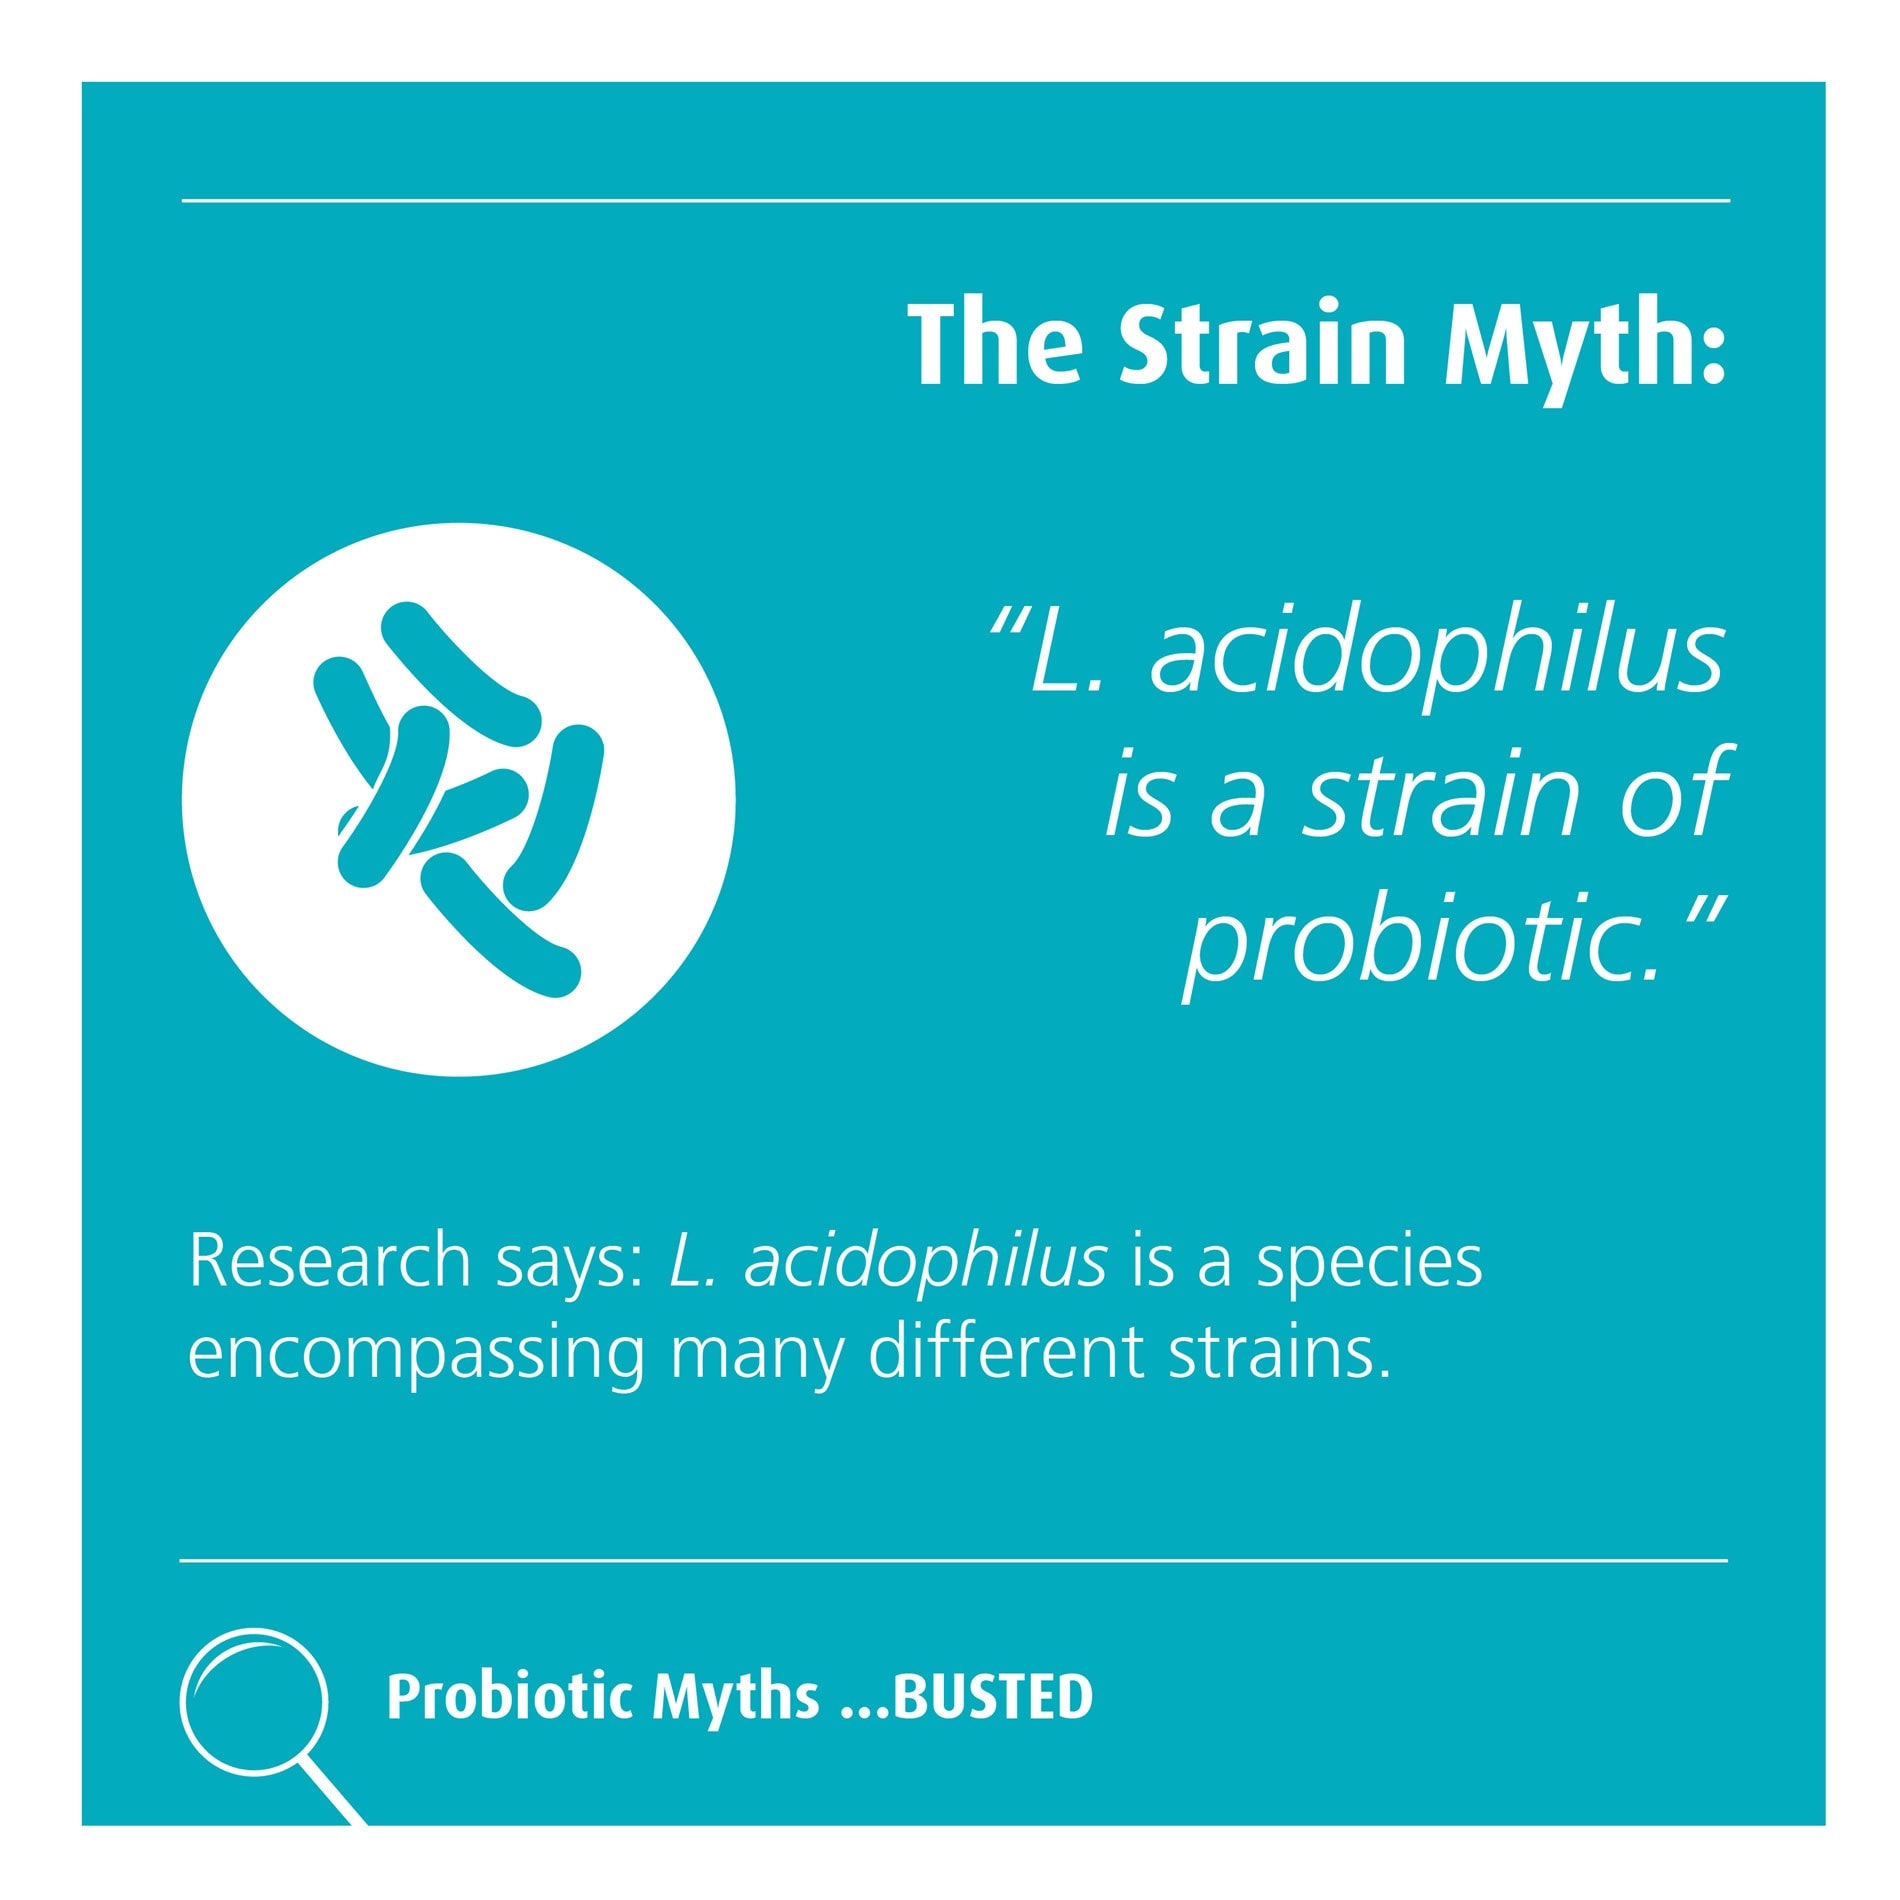 The strain myth